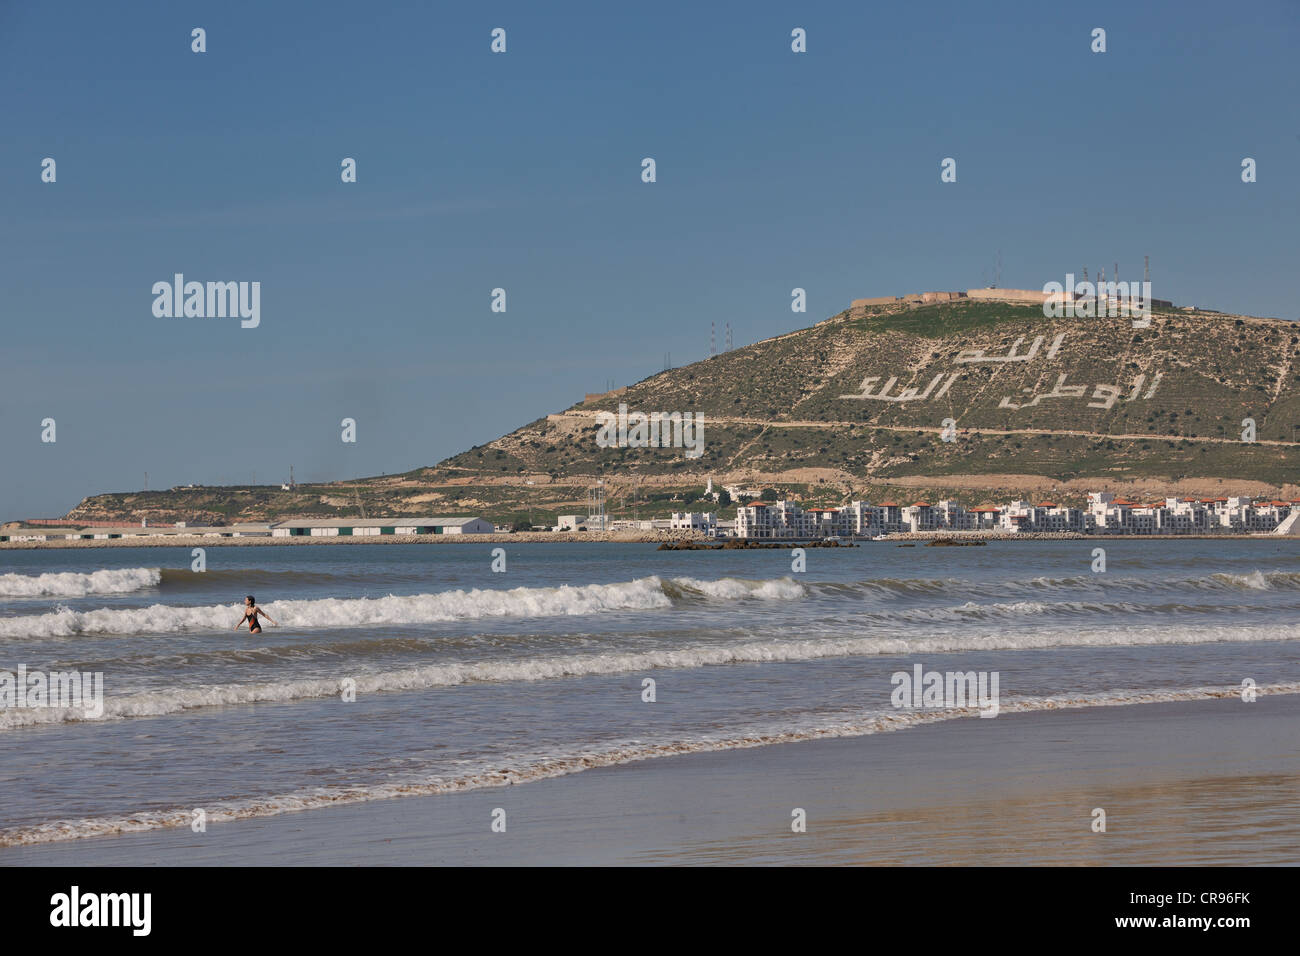 Spiaggia di Agadir, la collina con le parole, Allah, al-Watan, al-Malik, il significato di Allah, la patria, il re del Marocco, Africa Foto Stock